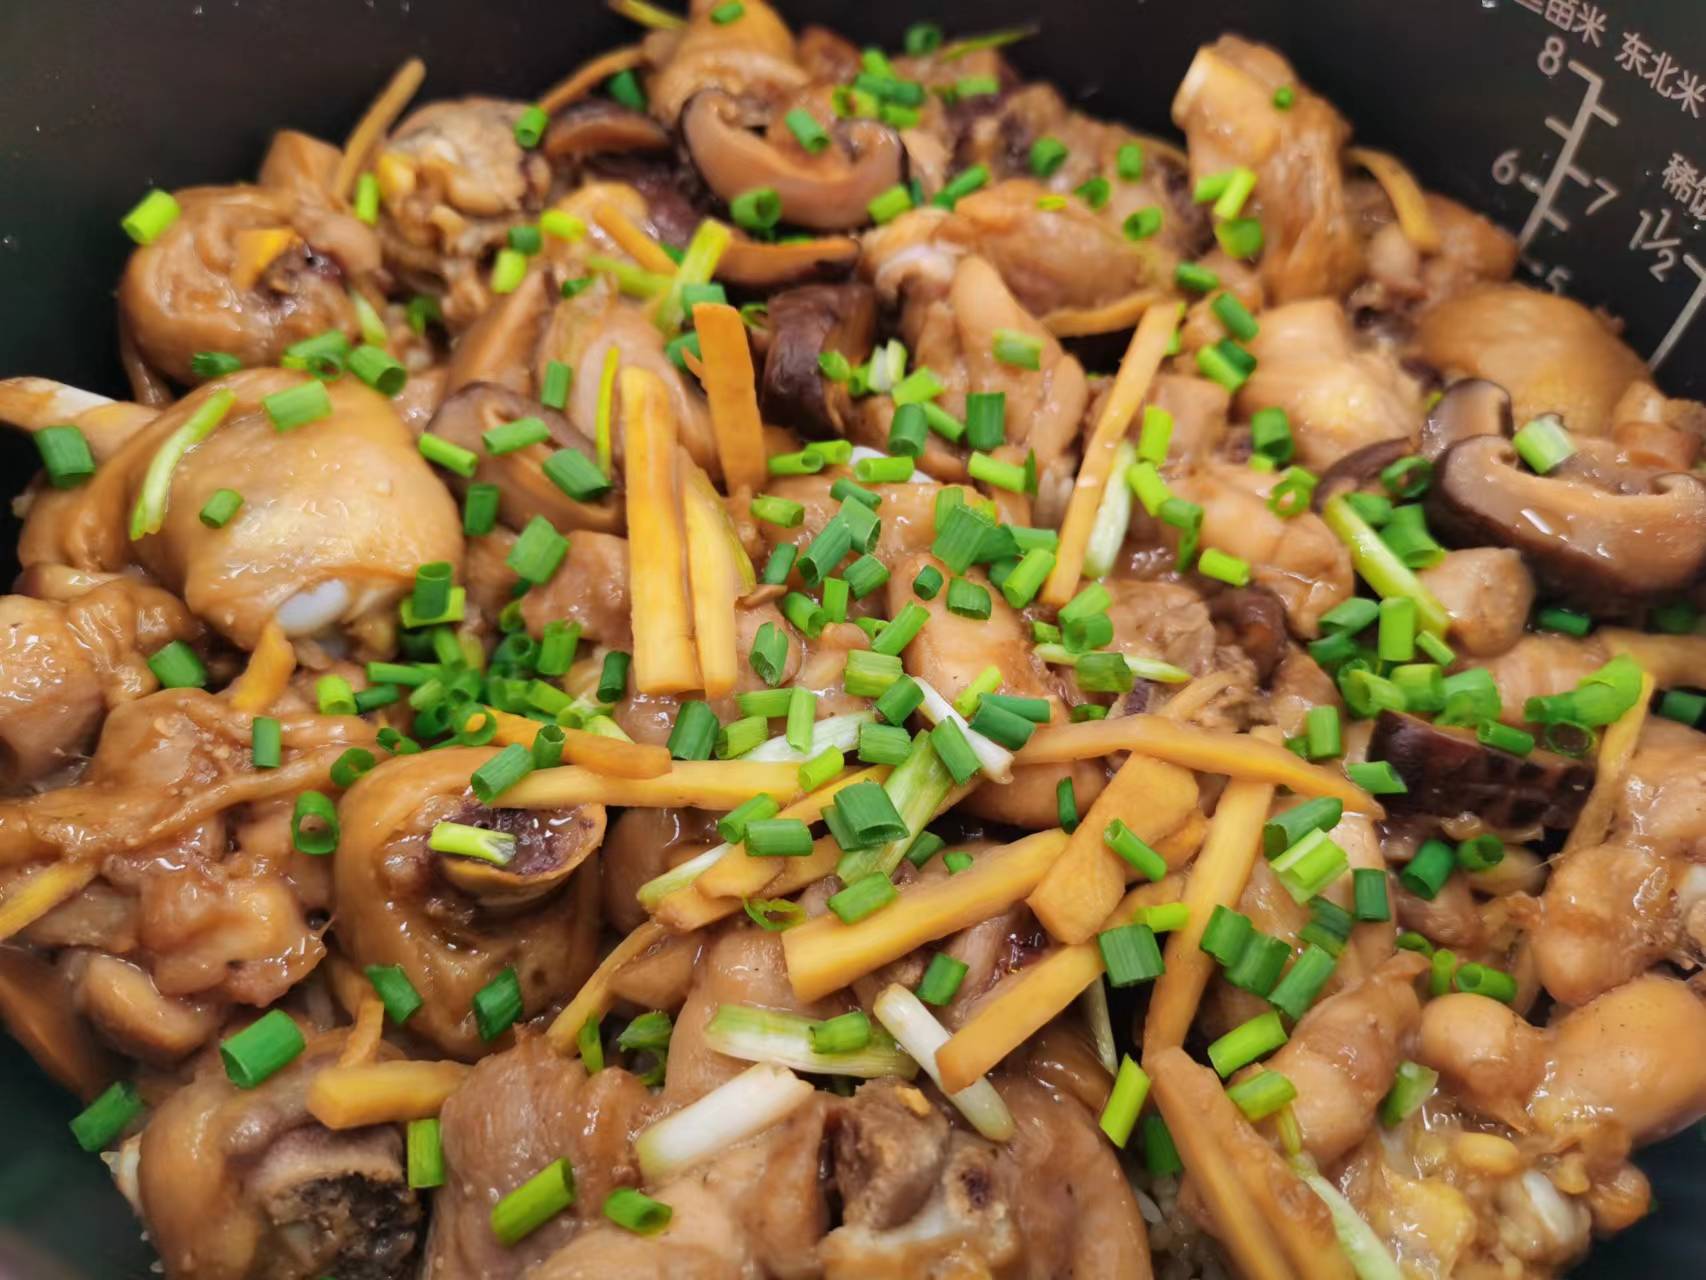 用电饭煲就能轻松做好香菇滑鸡煲仔饭,做法简单易学,米饭飘香